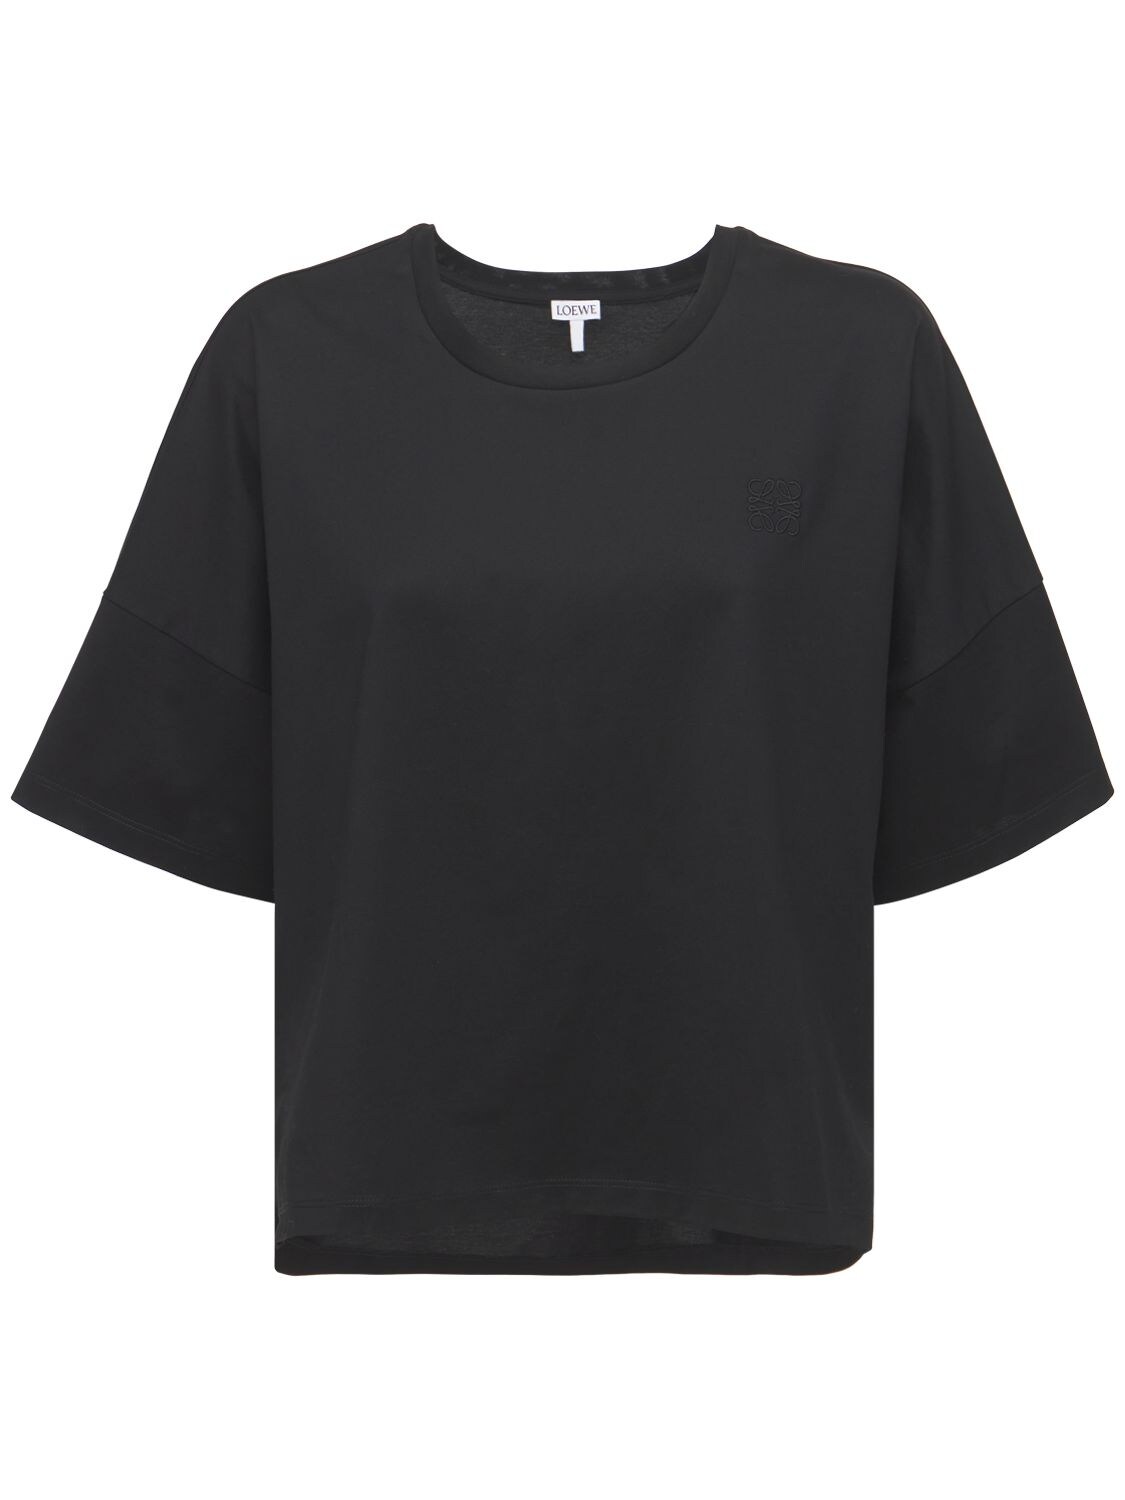 Loewe Logo Cropped Cotton Jersey T-shirt In Black | ModeSens